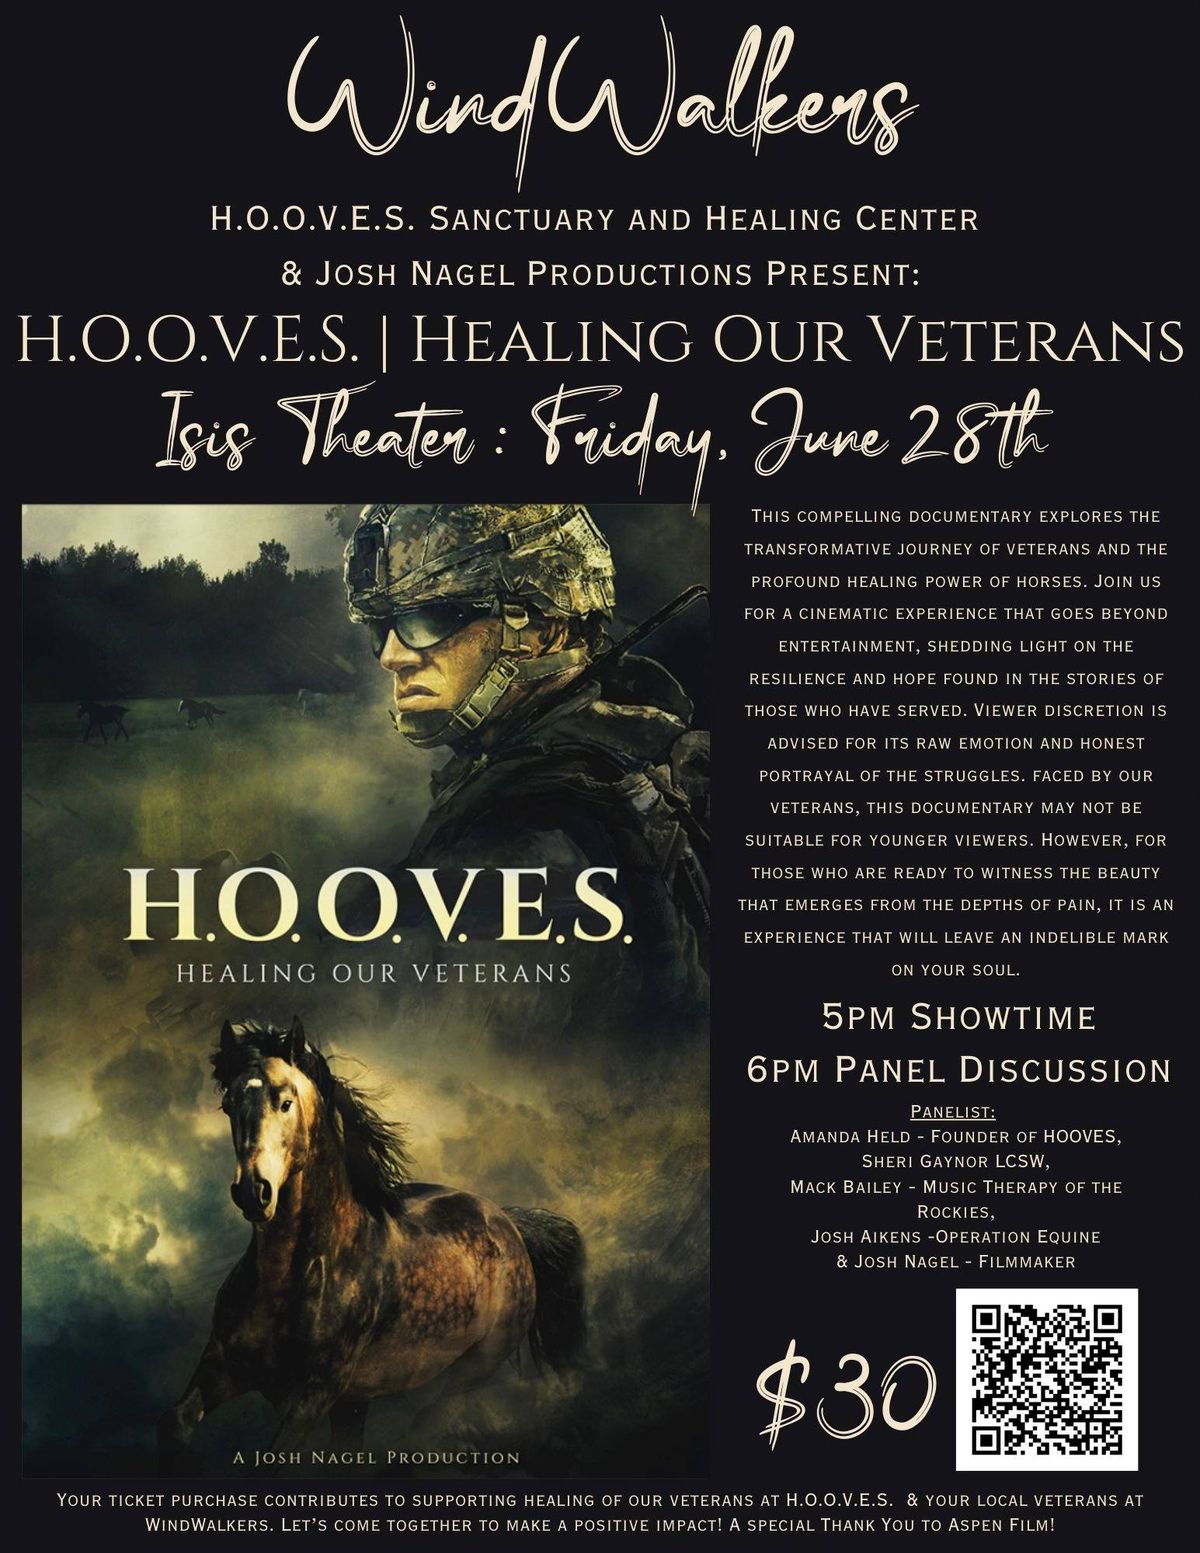 H.O.O.V.E.S. Healing Our Veterans